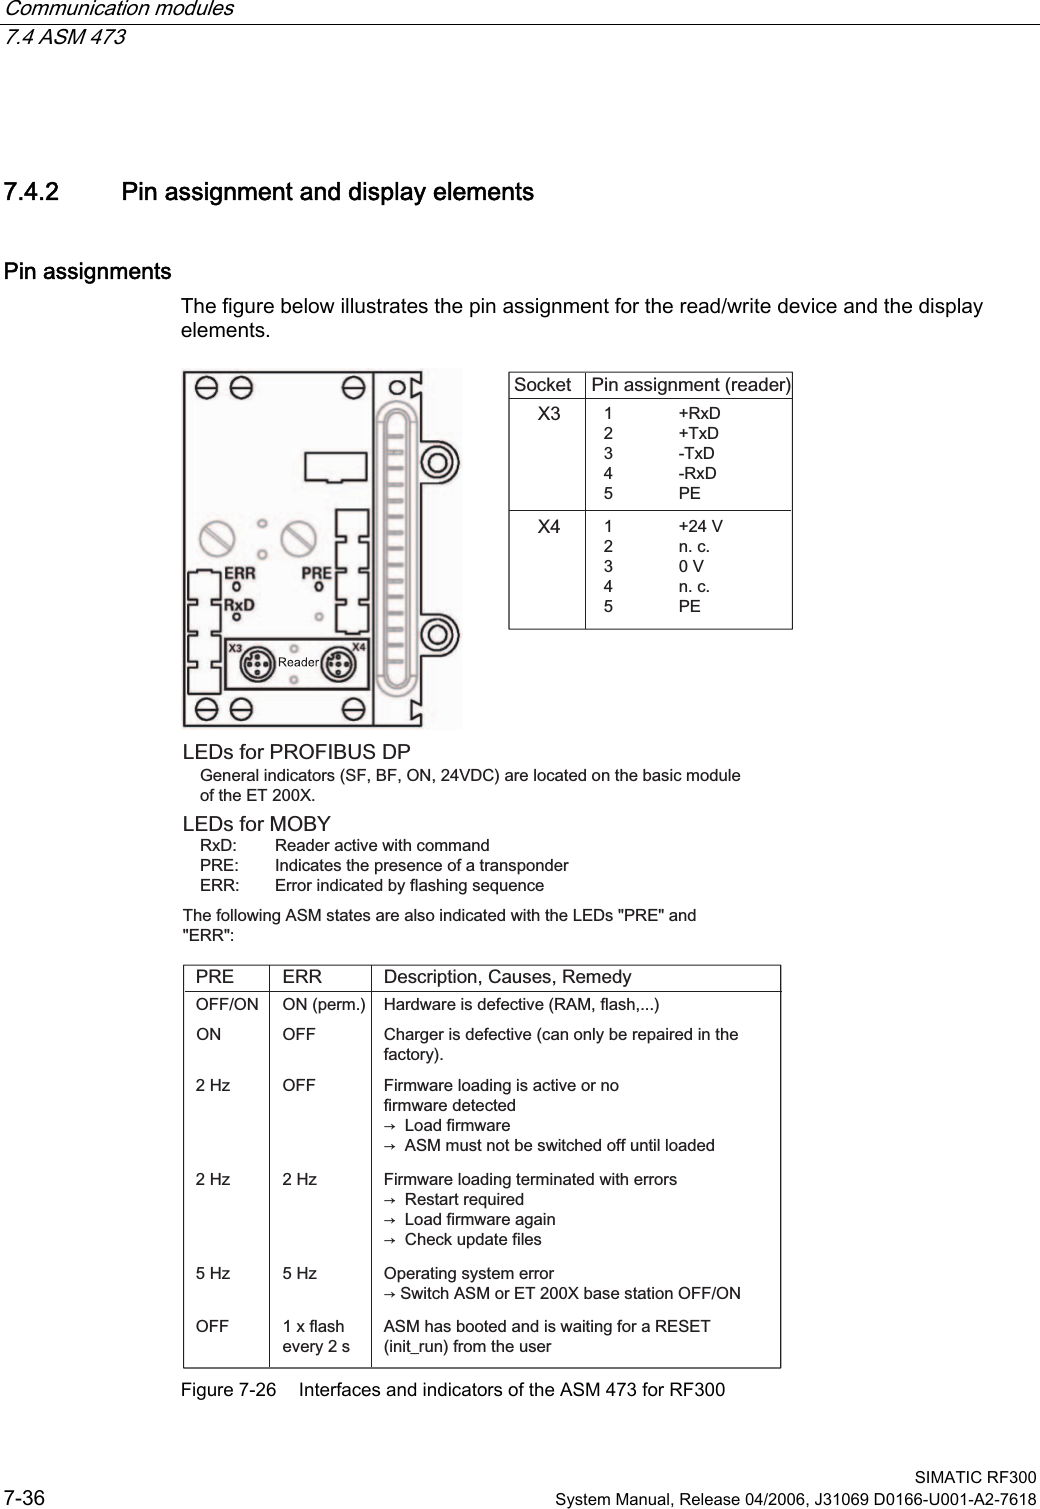 Communication modules 7.4 ASM 473  SIMATIC RF300 7-36  System Manual, Release 04/2006, J31069 D0166-U001-A2-7618 7.4.2  Pin assignment and display elements Pin assignments The figure below illustrates the pin assignment for the read/write device and the display elements.  2))+]+]2))21+]+]+]2));;21SHUP2))21 5[&apos; 7[&apos; 7[&apos; 5[&apos; 3( 9 QF 9 QF 3((5535([IODVKHYHU\V6RFNHW 3LQDVVLJQPHQWUHDGHU/(&apos;VIRU352),%86&apos;3*HQHUDOLQGLFDWRUV6)%)219&apos;&amp;DUHORFDWHGRQWKHEDVLFPRGXOHRIWKH(7;/(&apos;VIRU02%&lt;5[&apos; 5HDGHUDFWLYHZLWKFRPPDQG35( ,QGLFDWHVWKHSUHVHQFHRIDWUDQVSRQGHU(55 (UURULQGLFDWHGE\IODVKLQJVHTXHQFH7KHIROORZLQJ$60VWDWHVDUHDOVRLQGLFDWHGZLWKWKH/(&apos;V35(DQG(55&apos;HVFULSWLRQ&amp;DXVHV5HPHG\+DUGZDUHLVGHIHFWLYH5$0IODVK&amp;KDUJHULVGHIHFWLYHFDQRQO\EHUHSDLUHGLQWKHIDFWRU\)LUPZDUHORDGLQJLVDFWLYHRUQRILUPZDUHGHWHFWHGൺ/RDGILUPZDUHൺ$60PXVWQRWEHVZLWFKHGRIIXQWLOORDGHG)LUPZDUHORDGLQJWHUPLQDWHGZLWKHUURUVൺ5HVWDUWUHTXLUHGൺ/RDGILUPZDUHDJDLQൺ&amp;KHFNXSGDWHILOHV2SHUDWLQJV\VWHPHUURUൺ6ZLWFK$60RU(7;EDVHVWDWLRQ2))21$60KDVERRWHGDQGLVZDLWLQJIRUD5(6(7LQLWBUXQIURPWKHXVHU Figure 7-26  Interfaces and indicators of the ASM 473 for RF300 